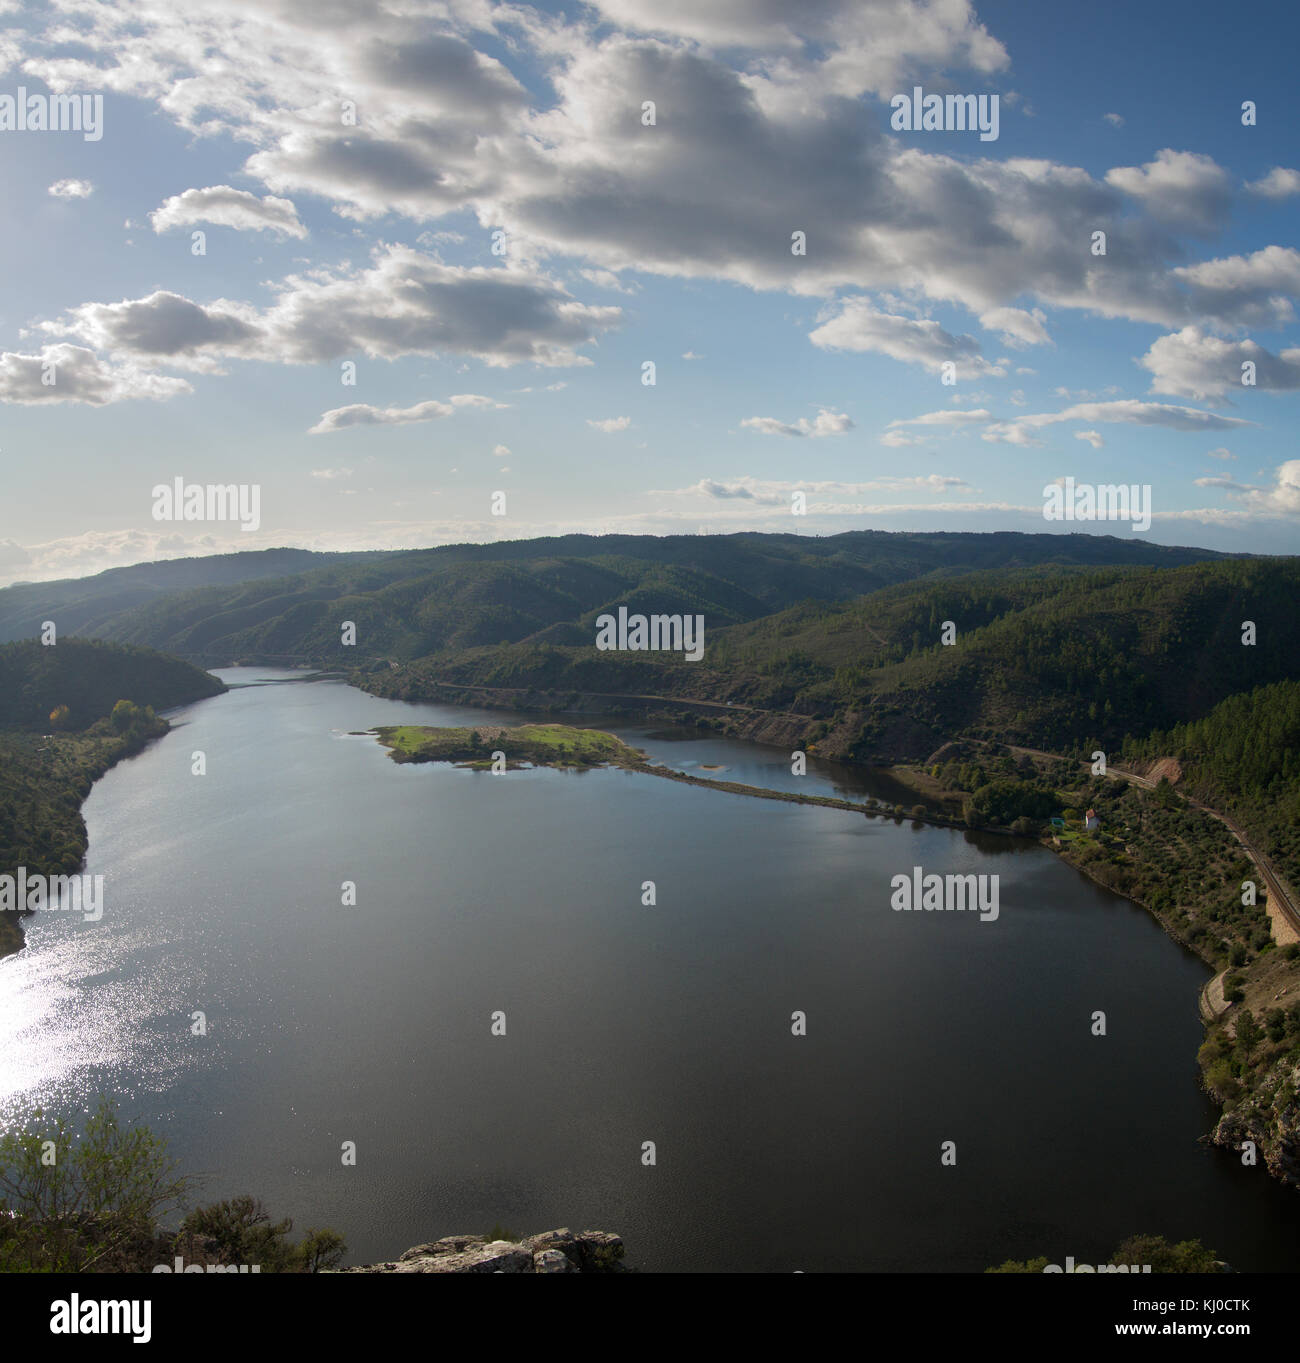 Lake downstream of Portas de Rodao. Vila Velha de Rodao, Portugal Stock Photo